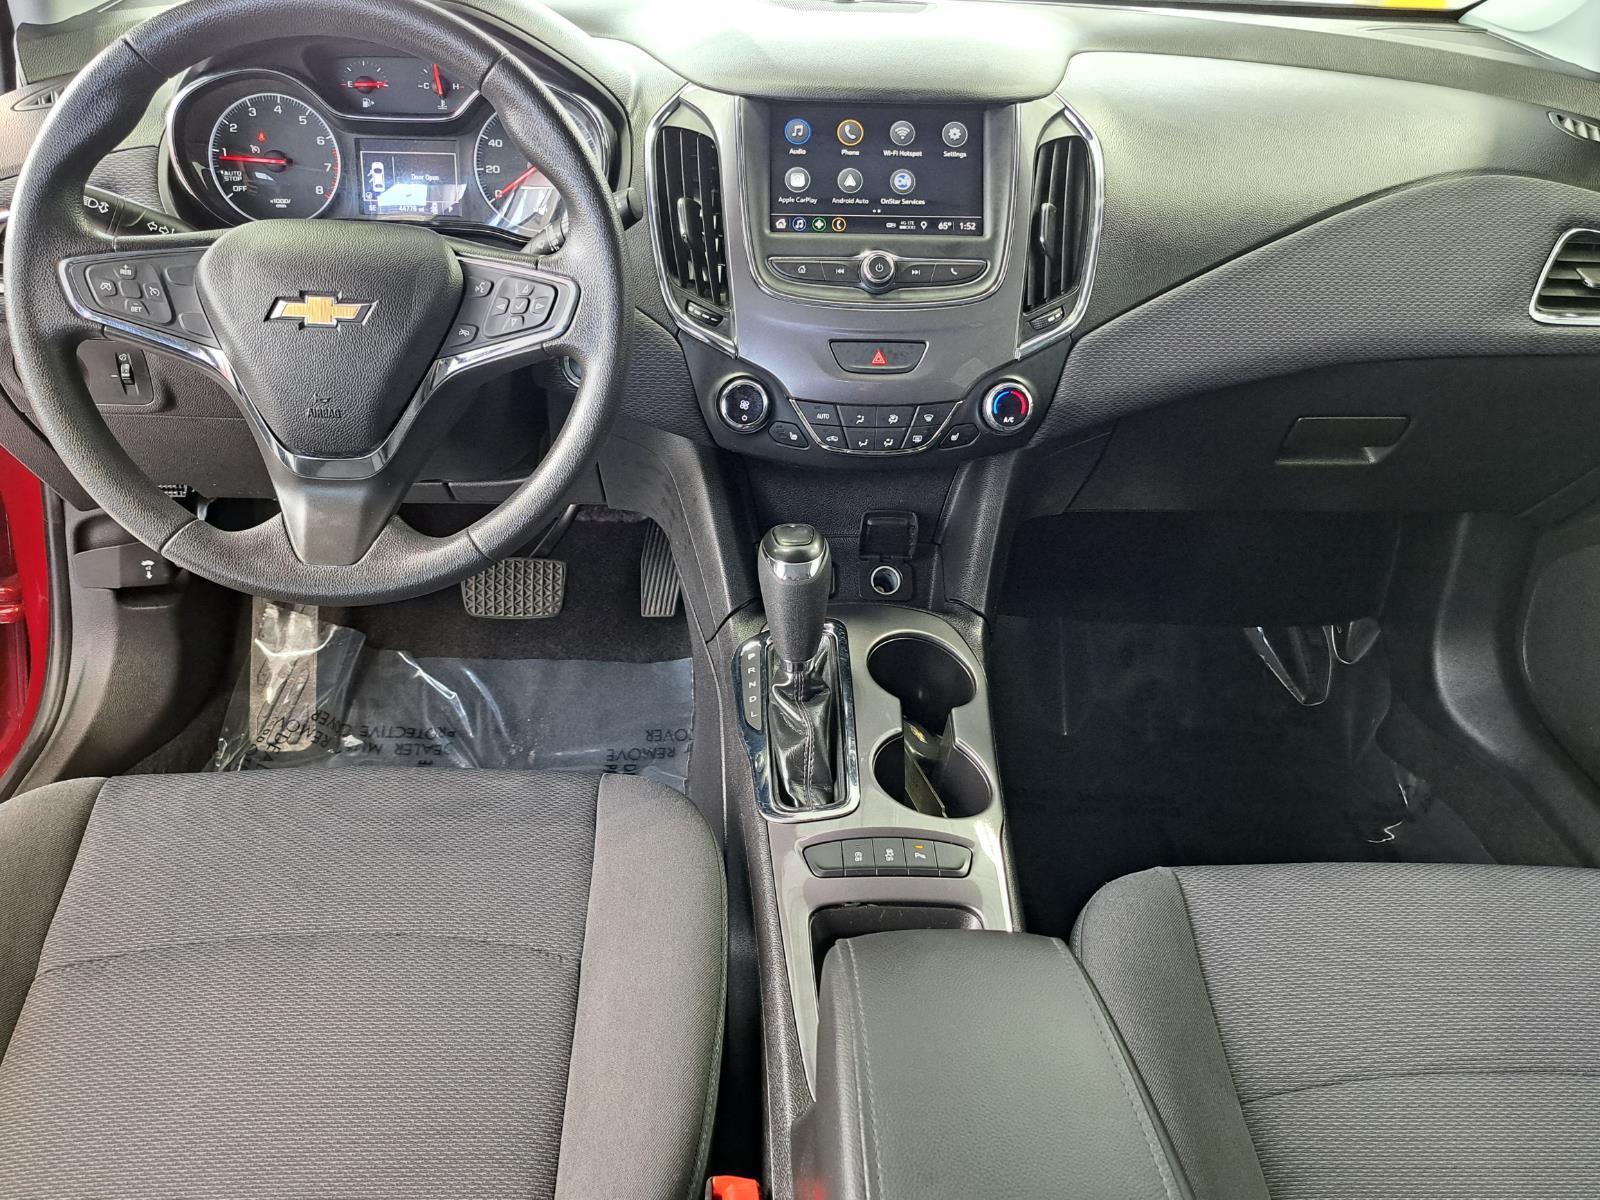 2019 Chevrolet Cruze LT Hatchback 4 Dr. Front Wheel Drive 31